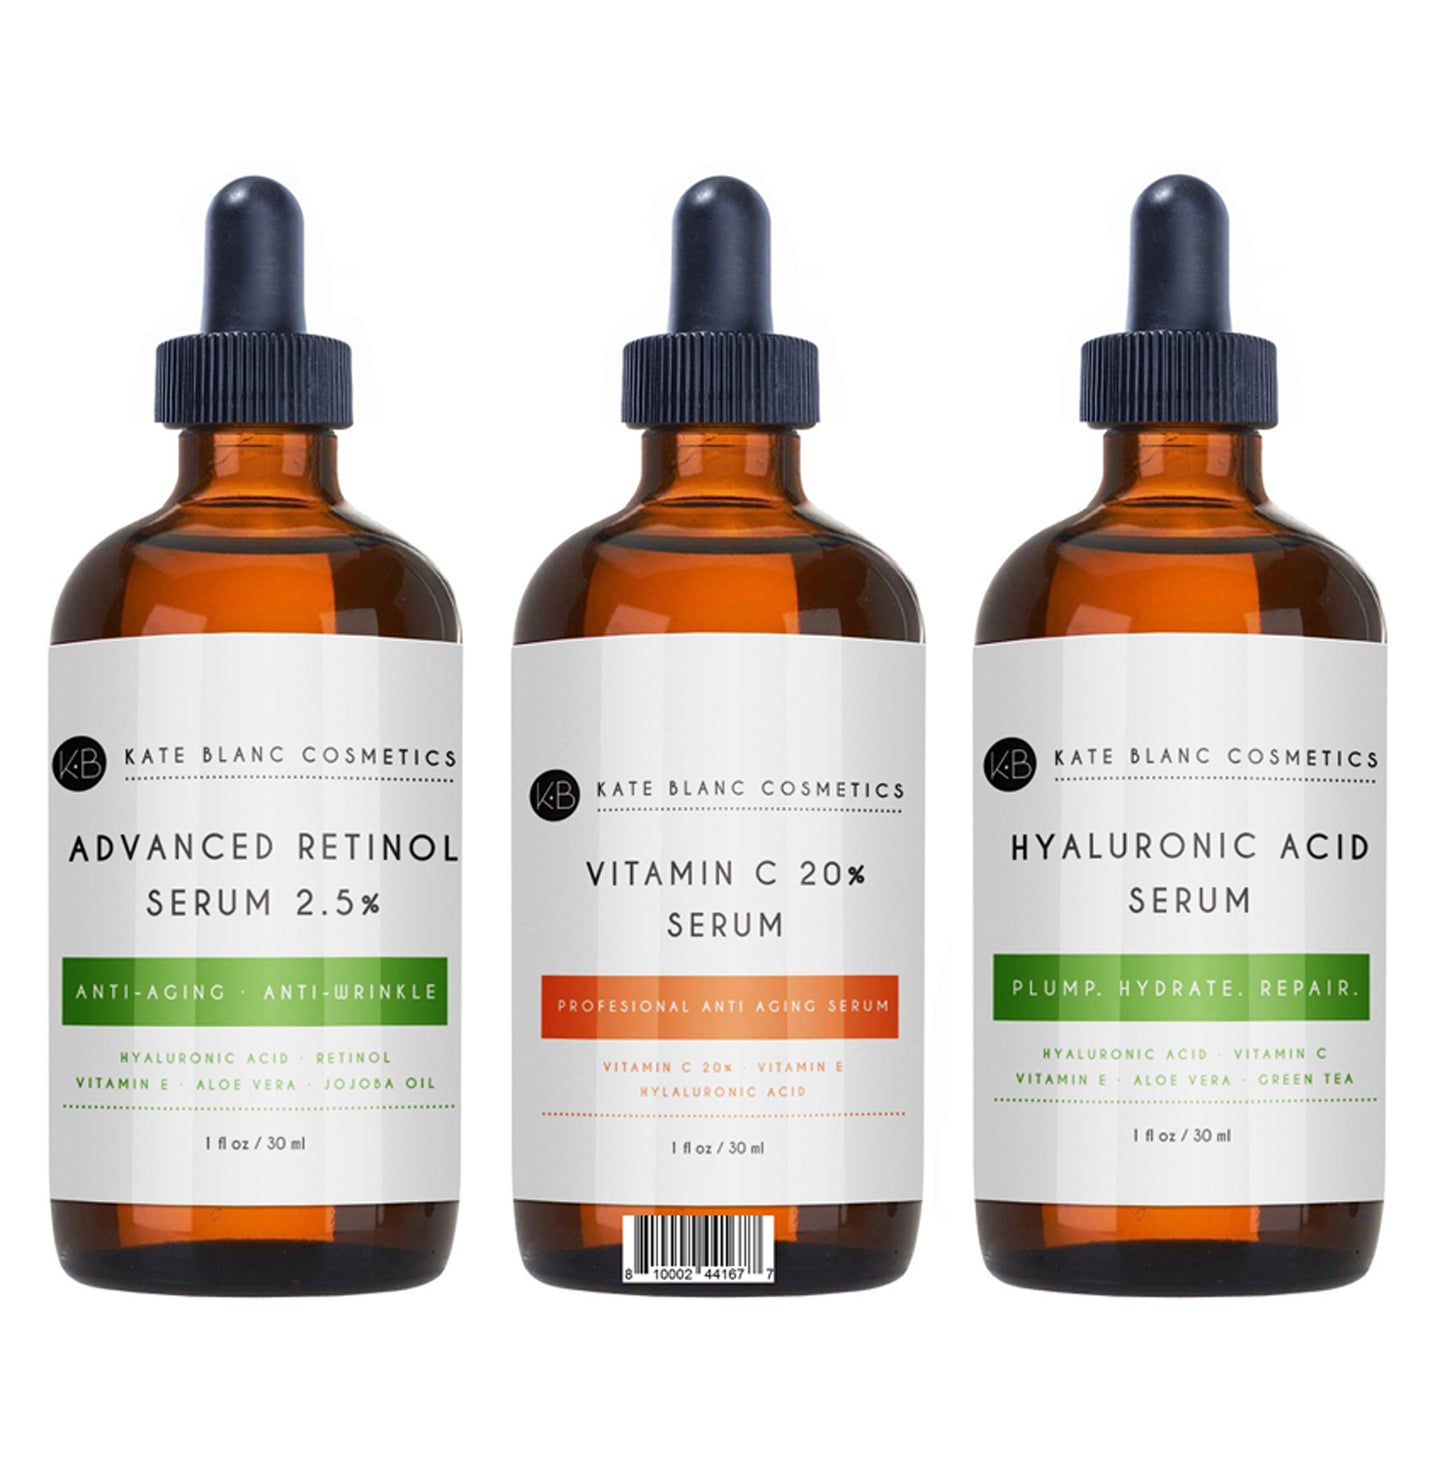 Anti Aging Serum Combo Pack - Retinol Serum 2.5, Hyaluronic Acid Serum, and Vitamin C Serum